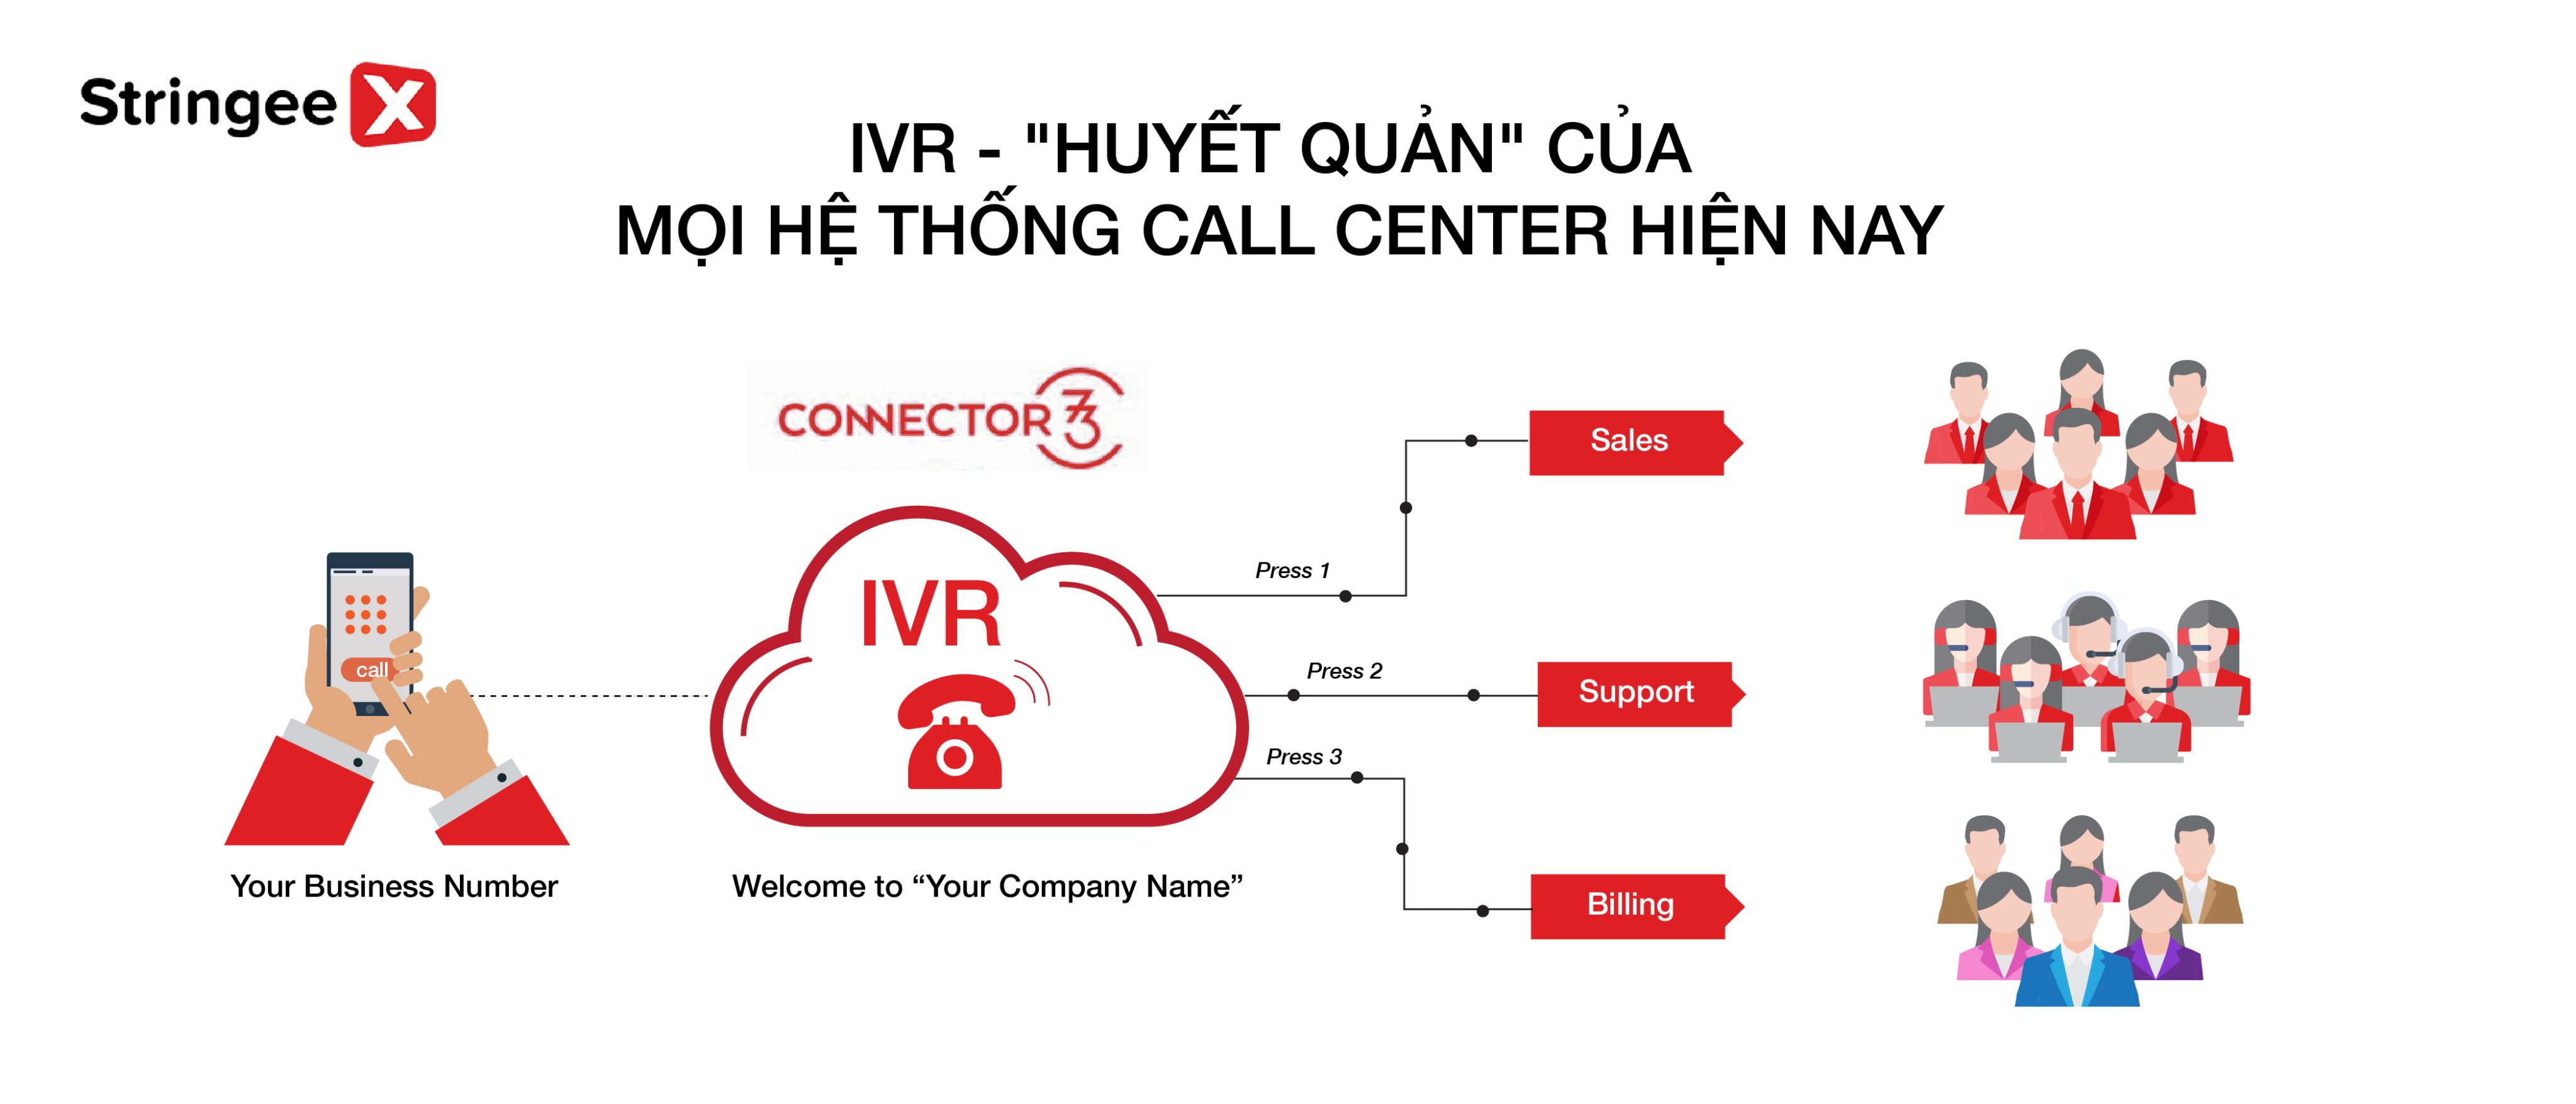 IVR là gì? Tại sao mọi Call center đều cần 1 hệ thống IVR hoàn chỉnh?